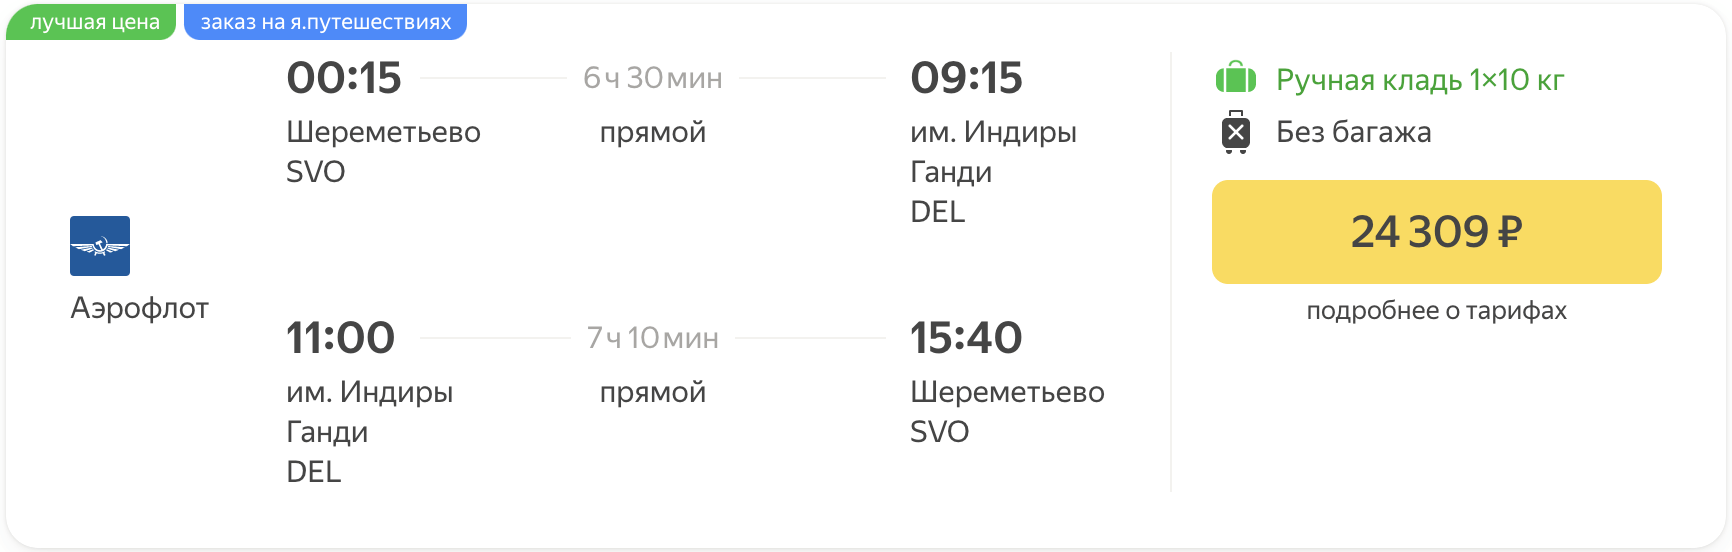 Billiger! Mit Aeroflot von Moskau nach Delhi ab 24300₽ hin und zurück